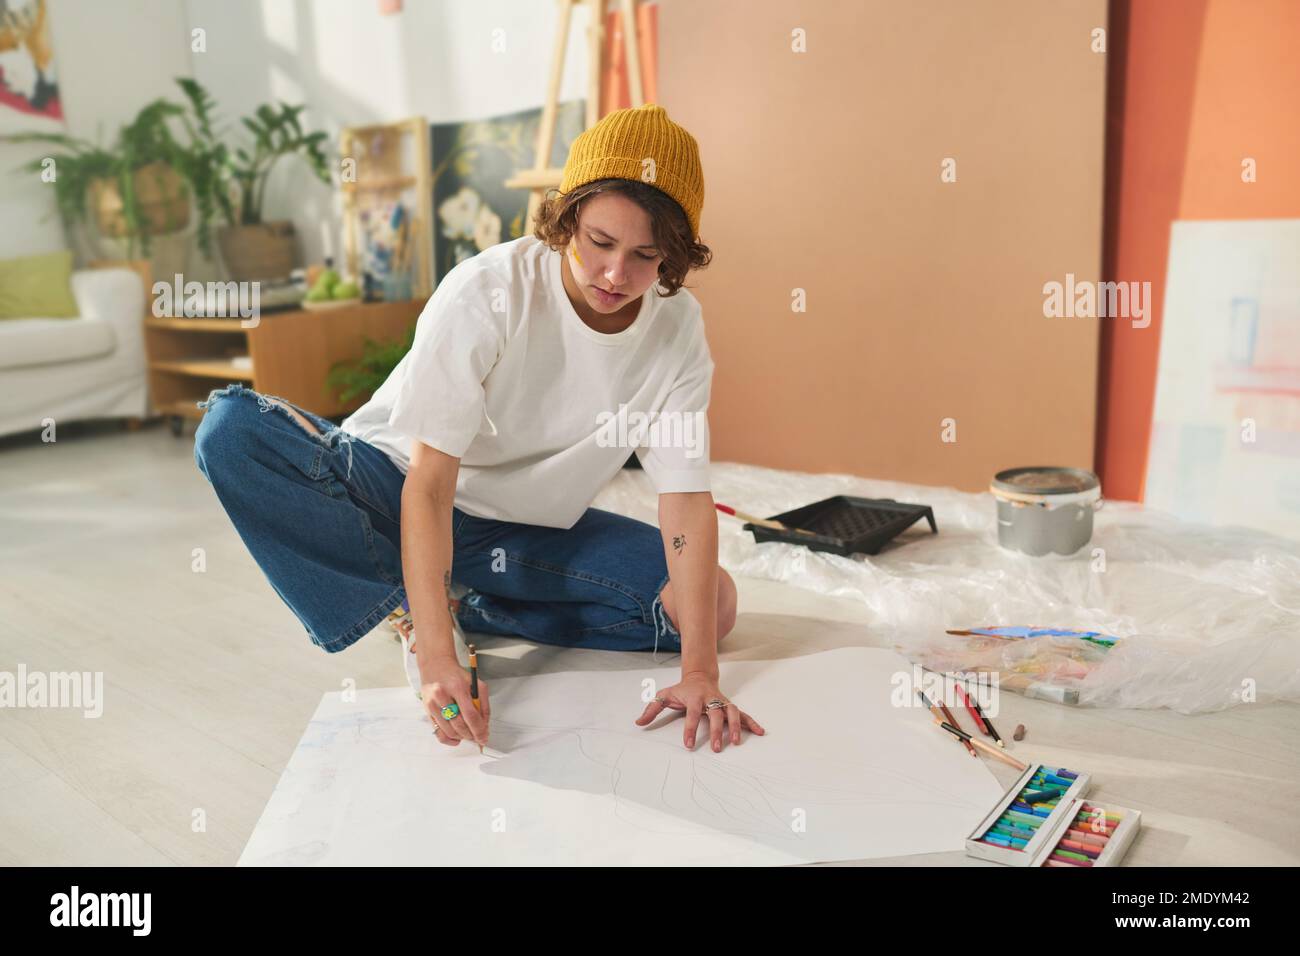 Jeune artiste féminine créative brune qui dessine avec des crayons sur une grande feuille de papier vierge tout en étant assise sur le sol dans un studio à la maison Banque D'Images